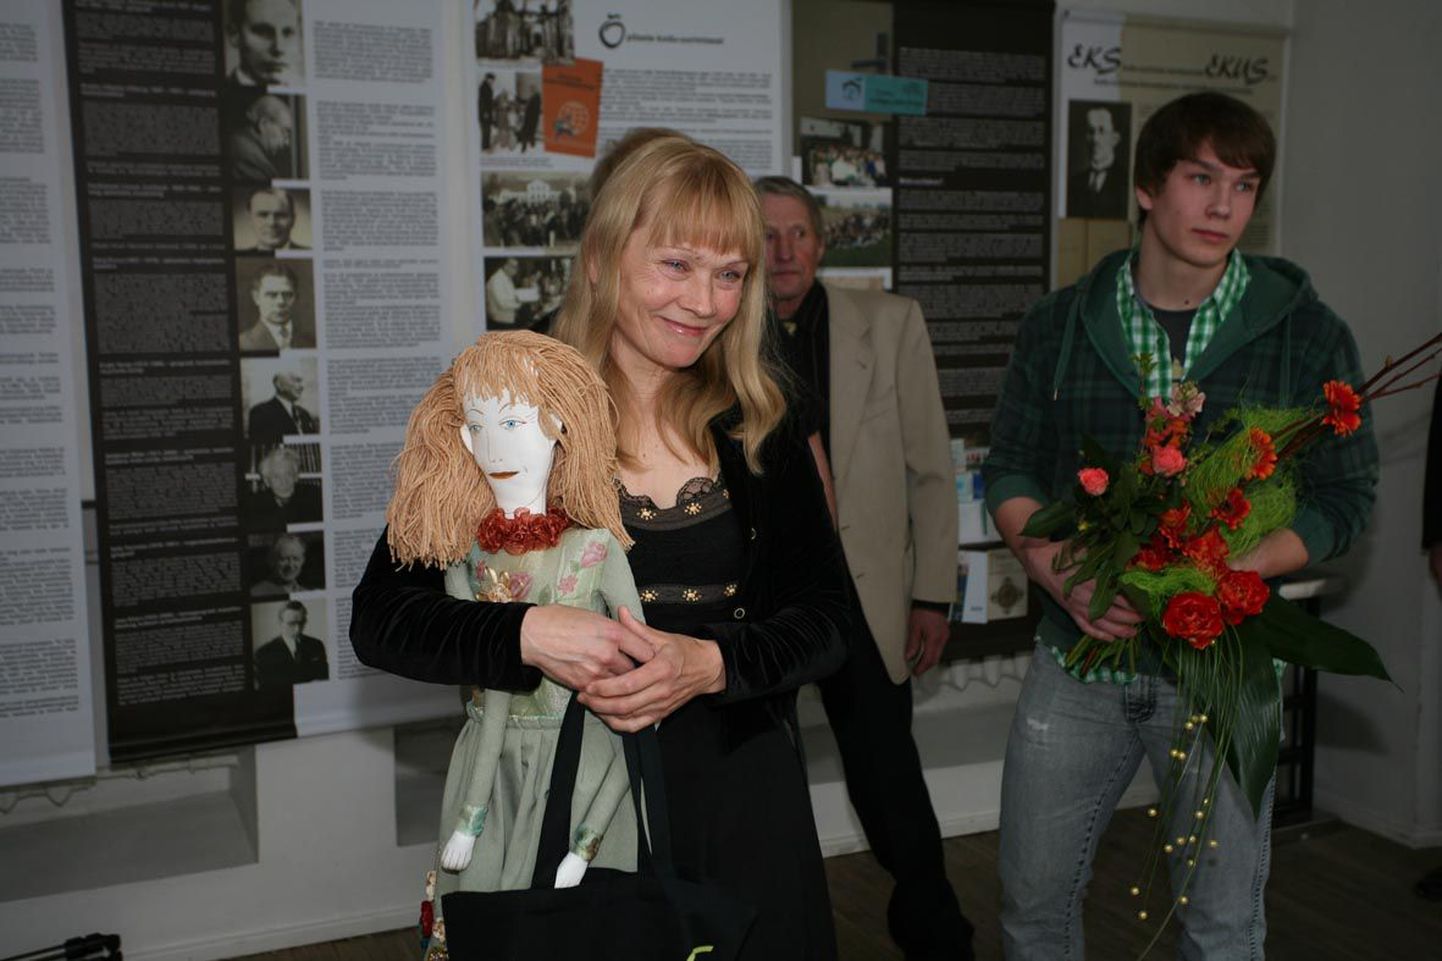 Järvamaa aasta ema tiitliga kaasnes ka kingitus: kunstnik Resa Tiitsmaa valmistatud nukk Lillehaldjas, mis pidi saama sama ilus, nooruslik ja rõõmsameelne nagu Aile Pent ise.